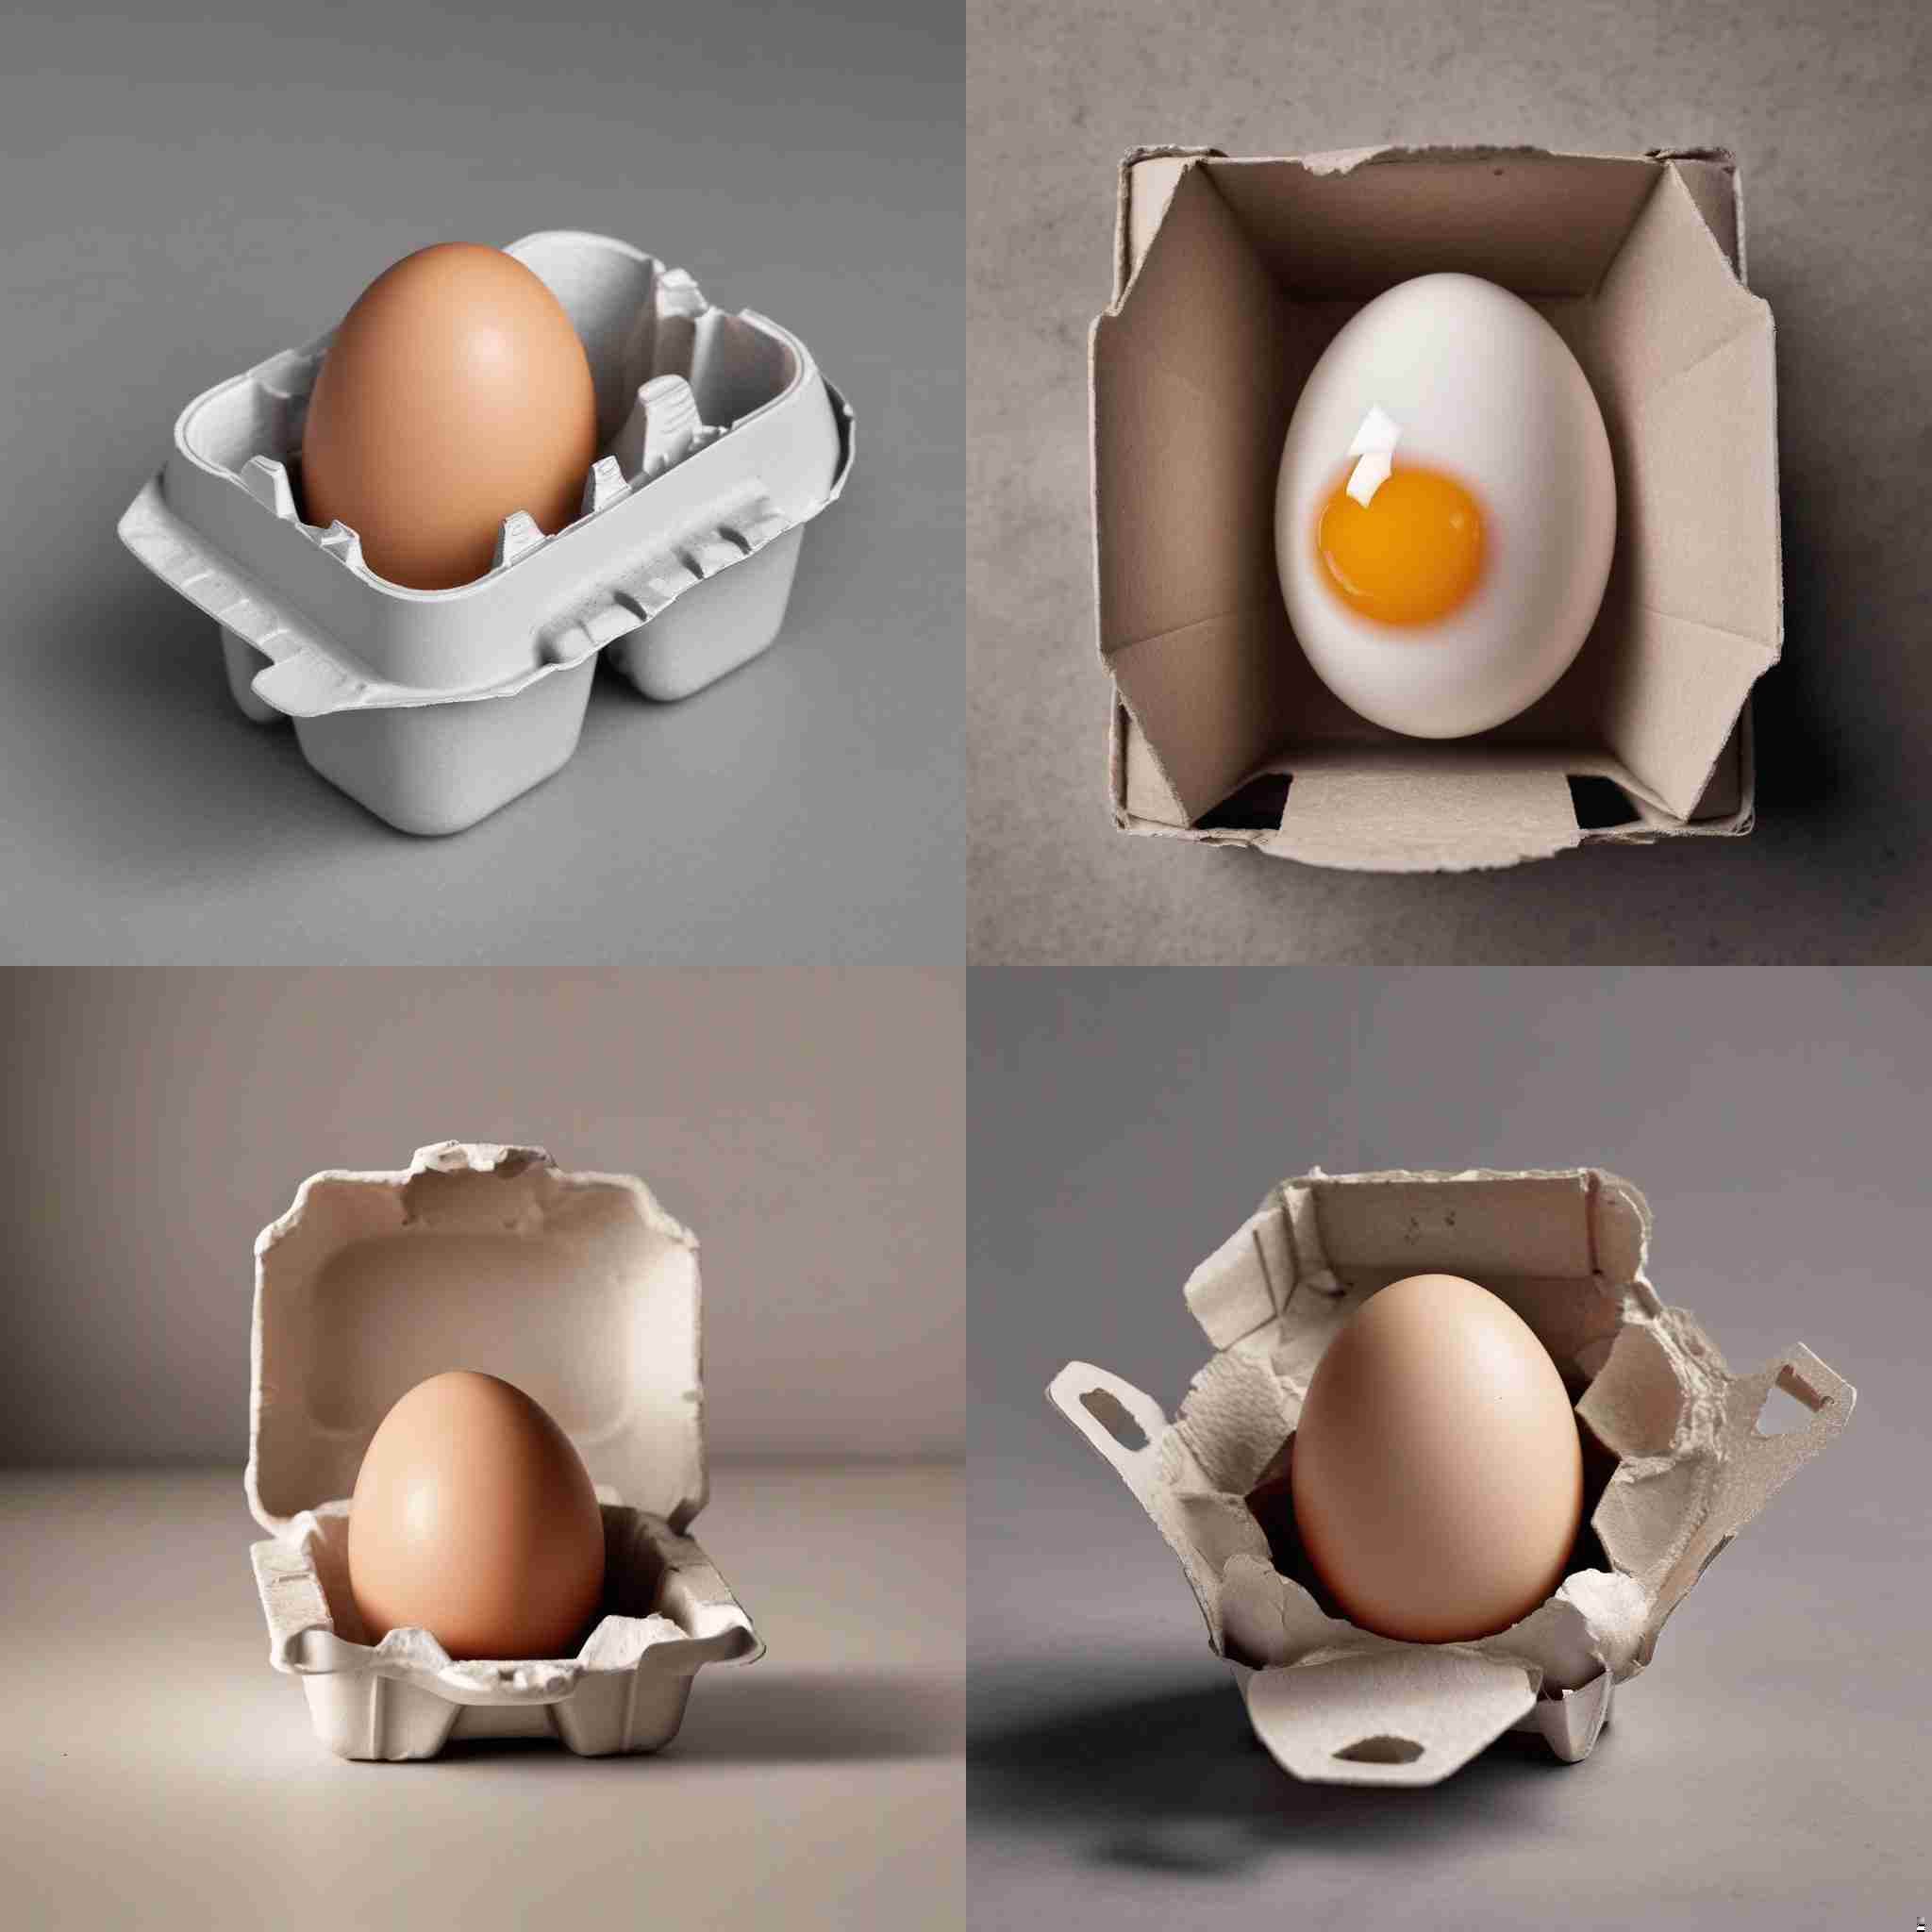 An egg in a carton